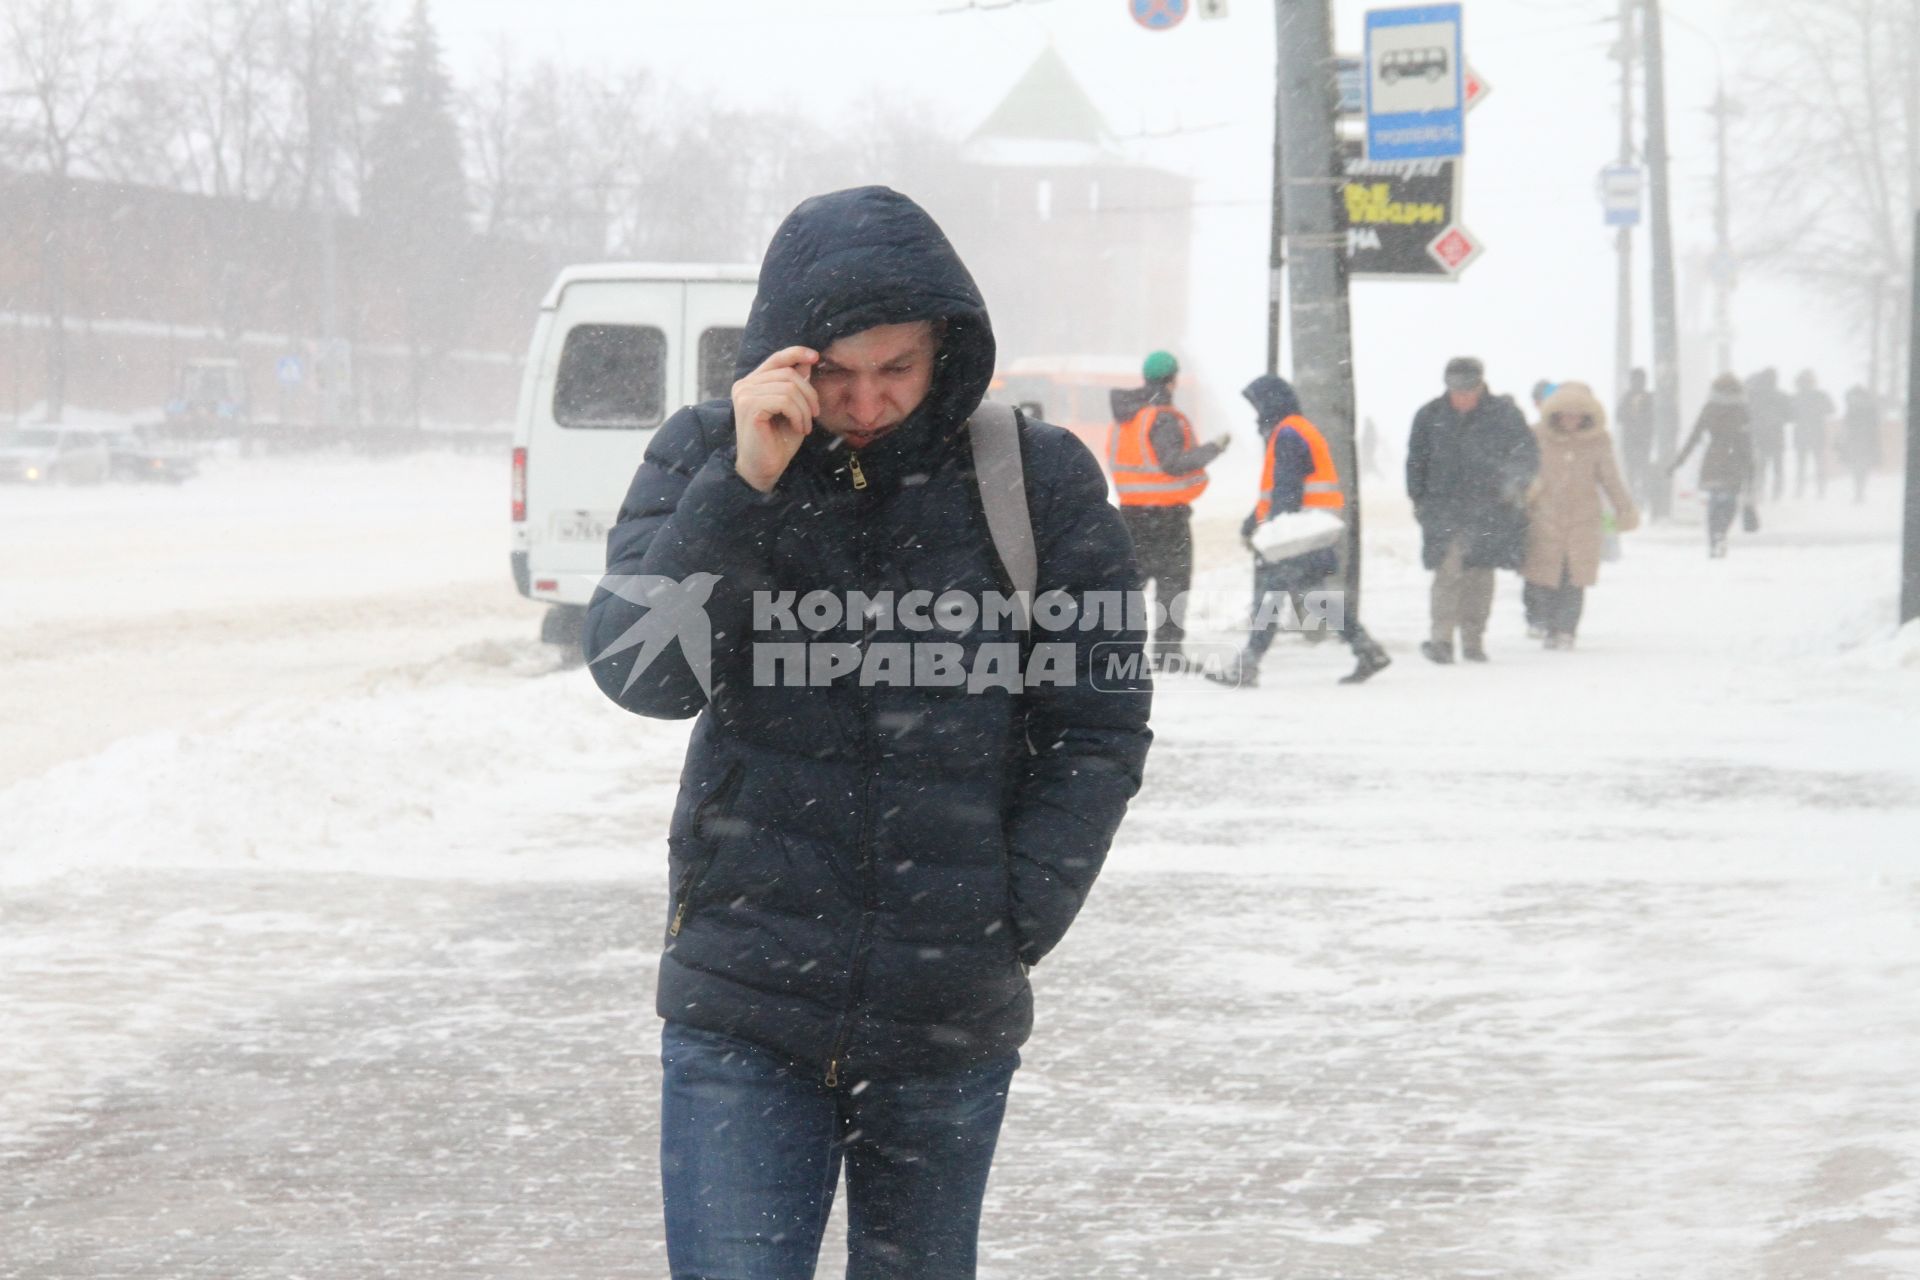 Нижний Новгород. Люди идут по  улице во время метели.